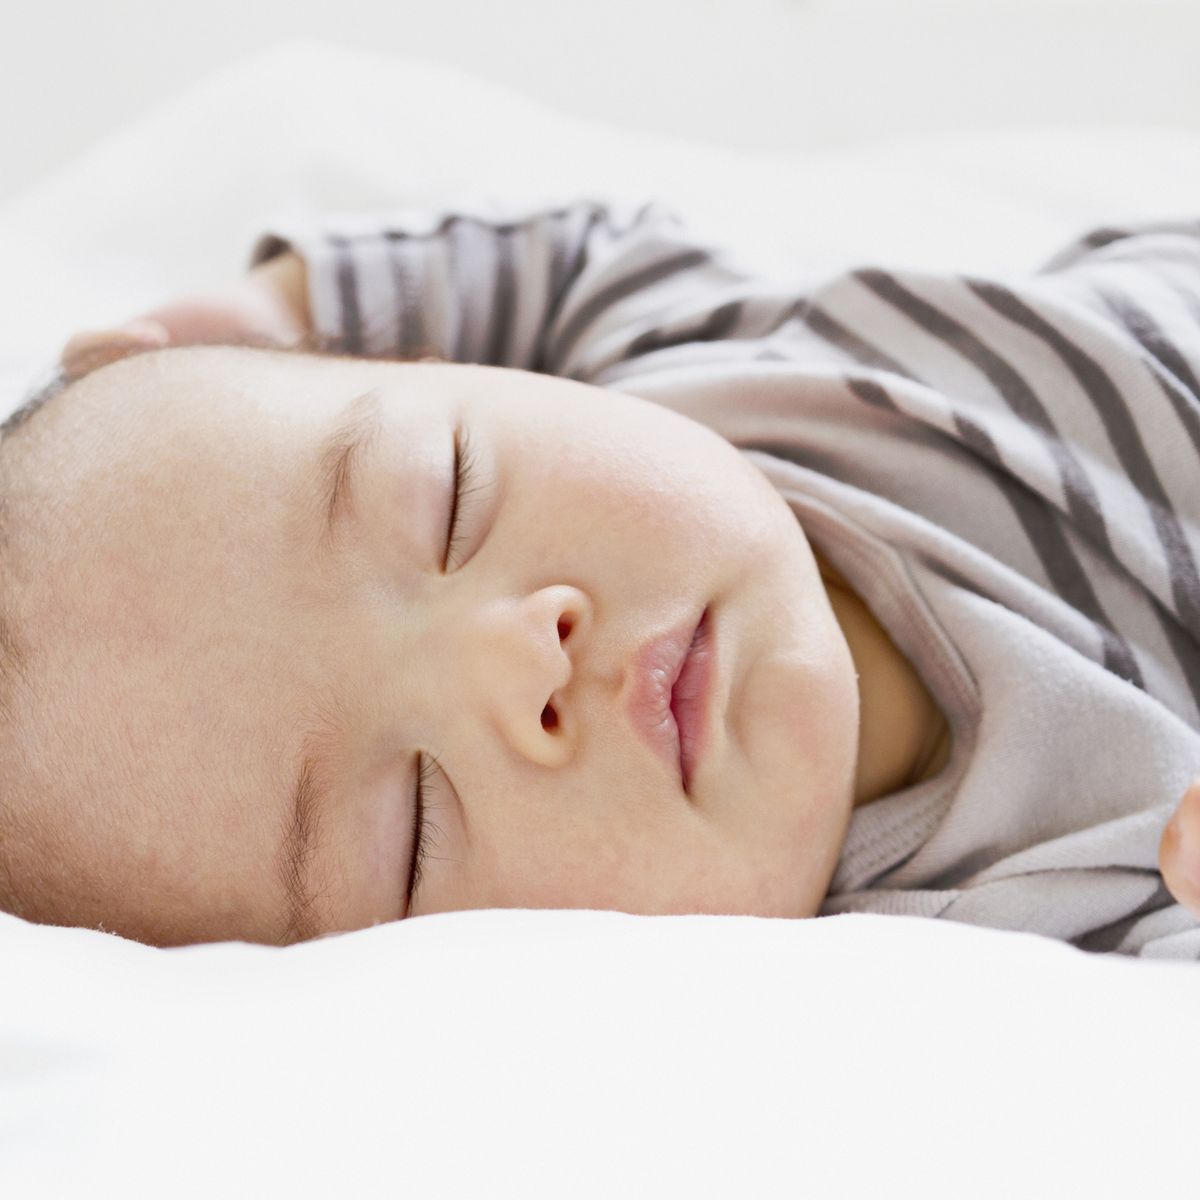 Ruido Blanco Bebés 👶 Sonido Blanco para Dormir Bebés 👶 Sonido Blanco Bebés  